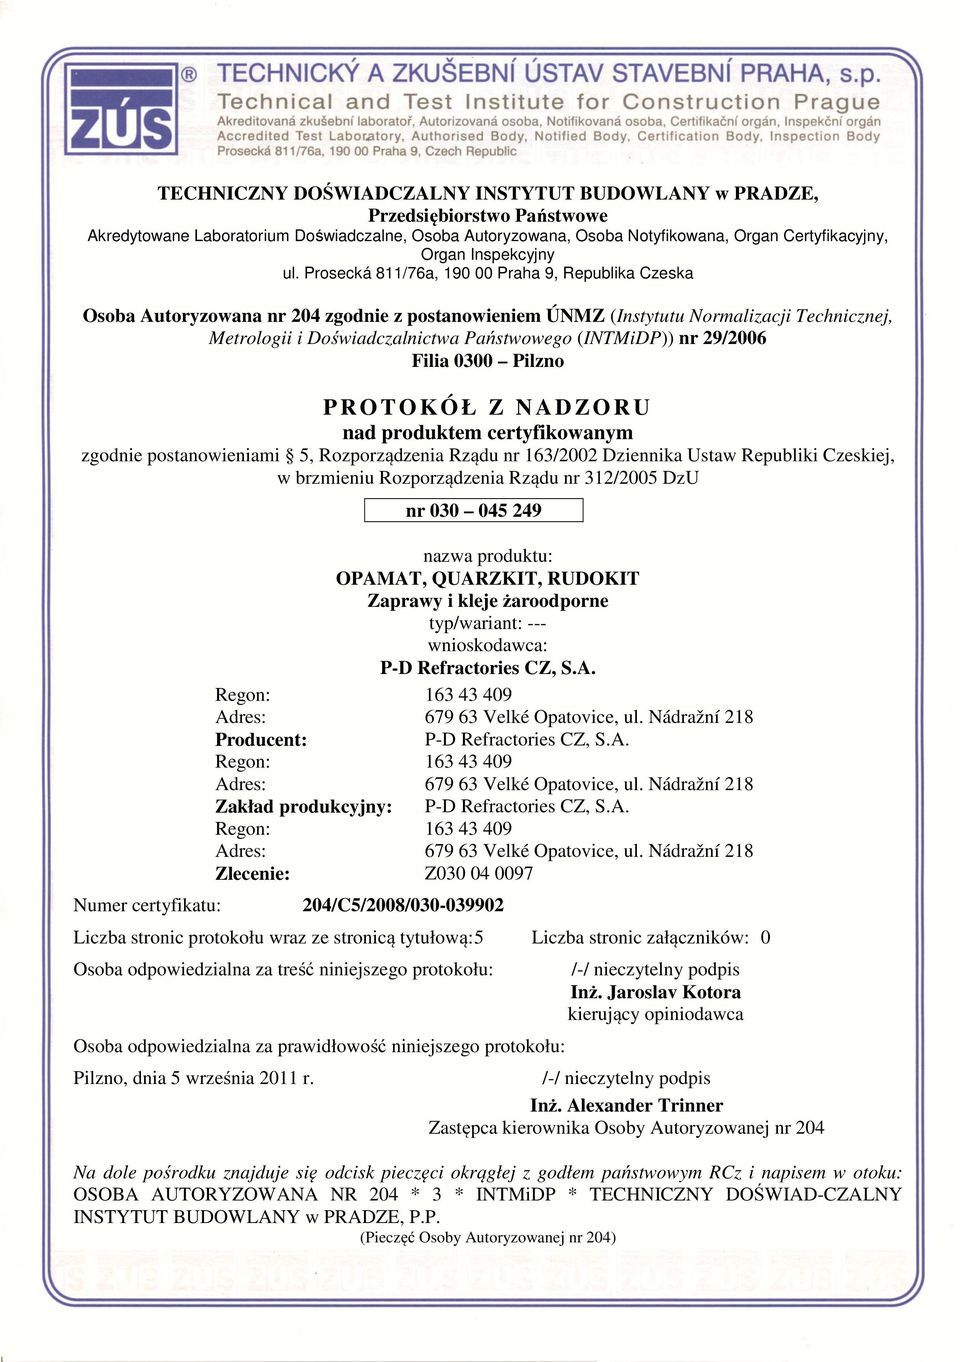 Prosecká 811/76a, 190 00 Praha 9, Republika Czeska Osoba Autoryzowana nr 204 zgodnie z postanowieniem ÚNMZ (Instytutu Normalizacji Technicznej, Metrologii i Doświadczalnictwa Państwowego (INTMiDP))